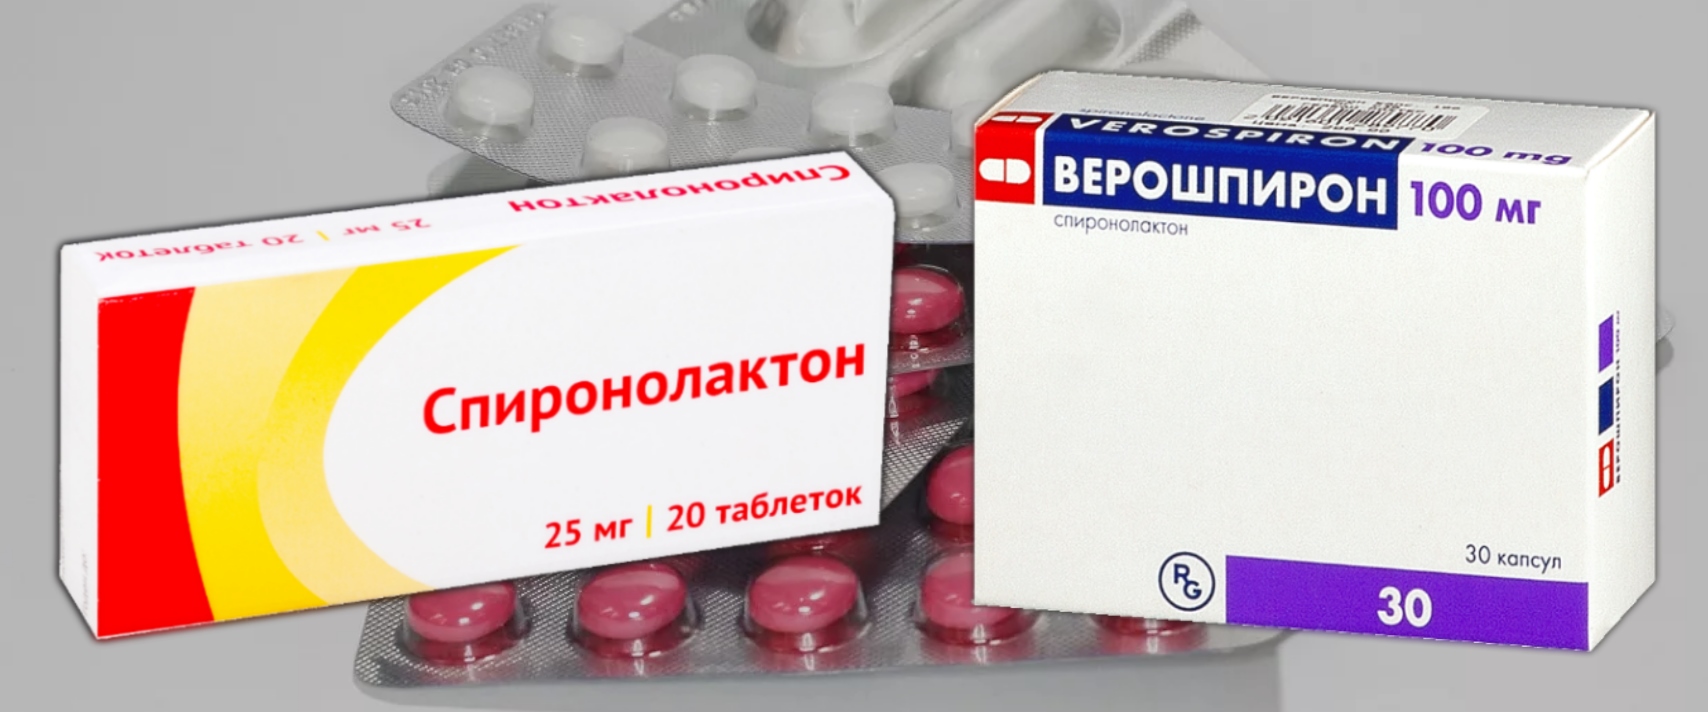 Верошпирон 25 мг спиронолактон